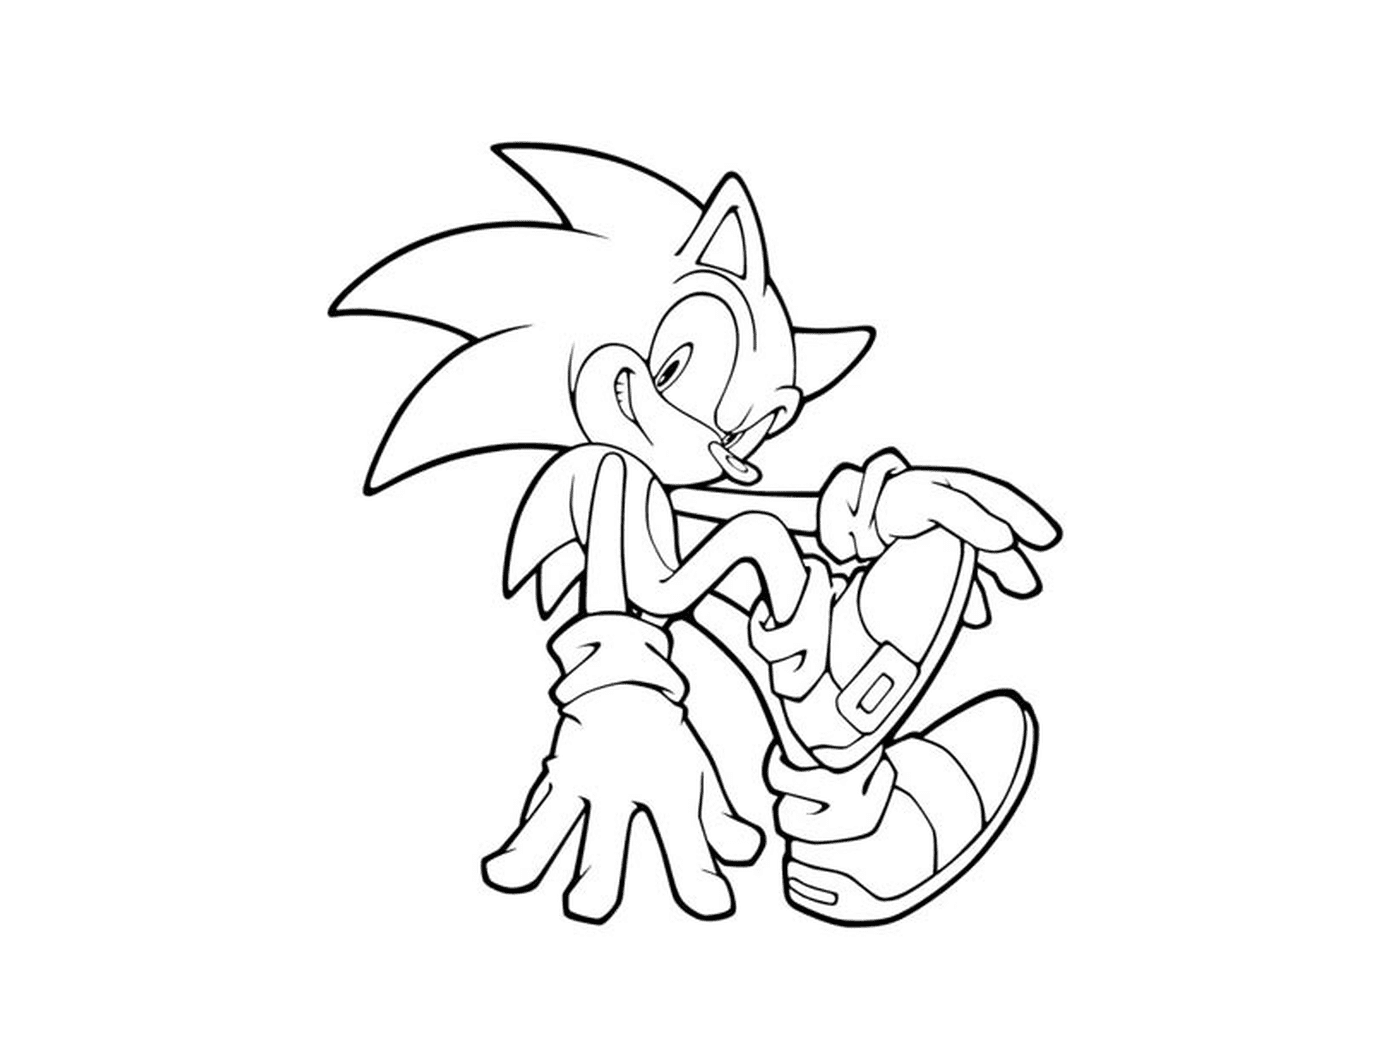  Súper rápido Sonic 